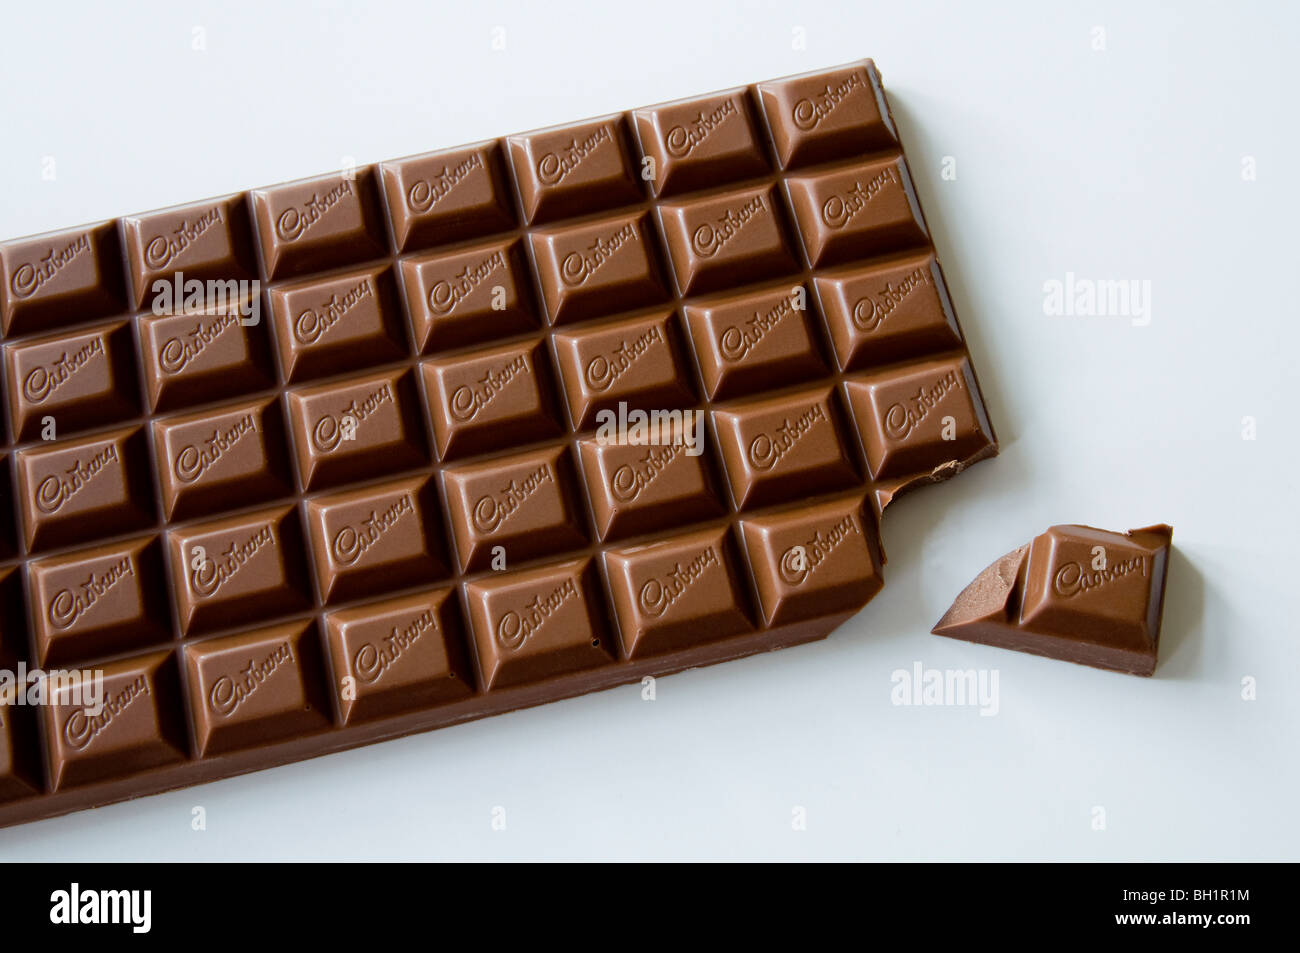 Grande barre de chocolat Cadbury's avec une pièce cassée ! Banque D'Images